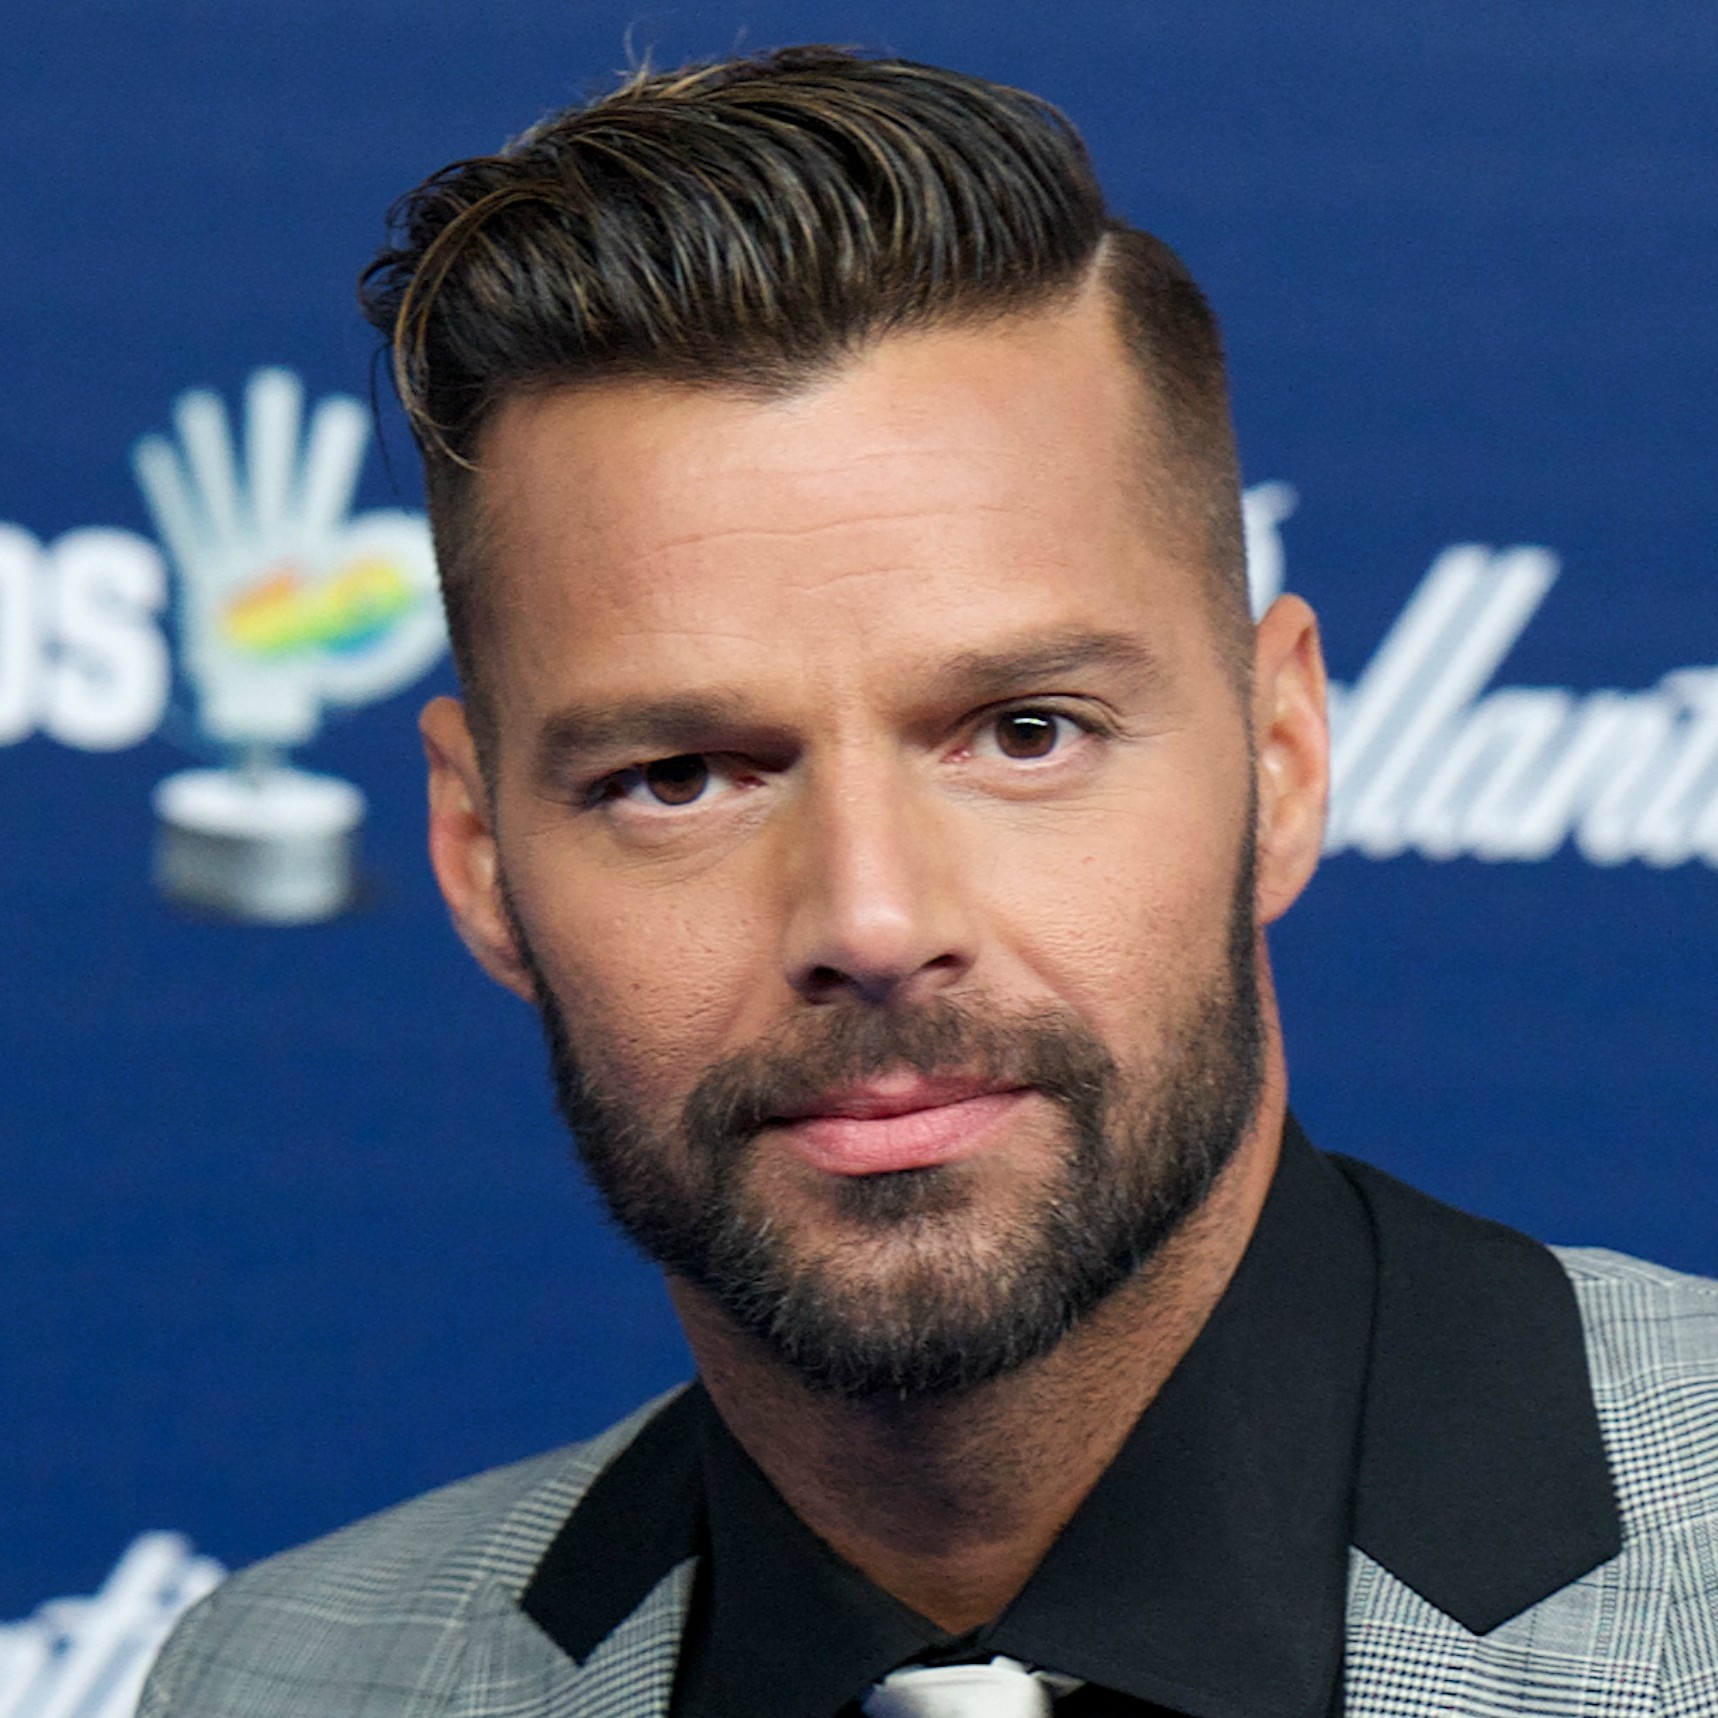 O cantor Ricky Martin, de 42 anos, escreveu em seu site oficial em 2010: "Sinto orgulho em dizer que sou um homem homossexual de sorte, estou muito orgulhoso de ser quem eu sou". (Foto: Getty Images)